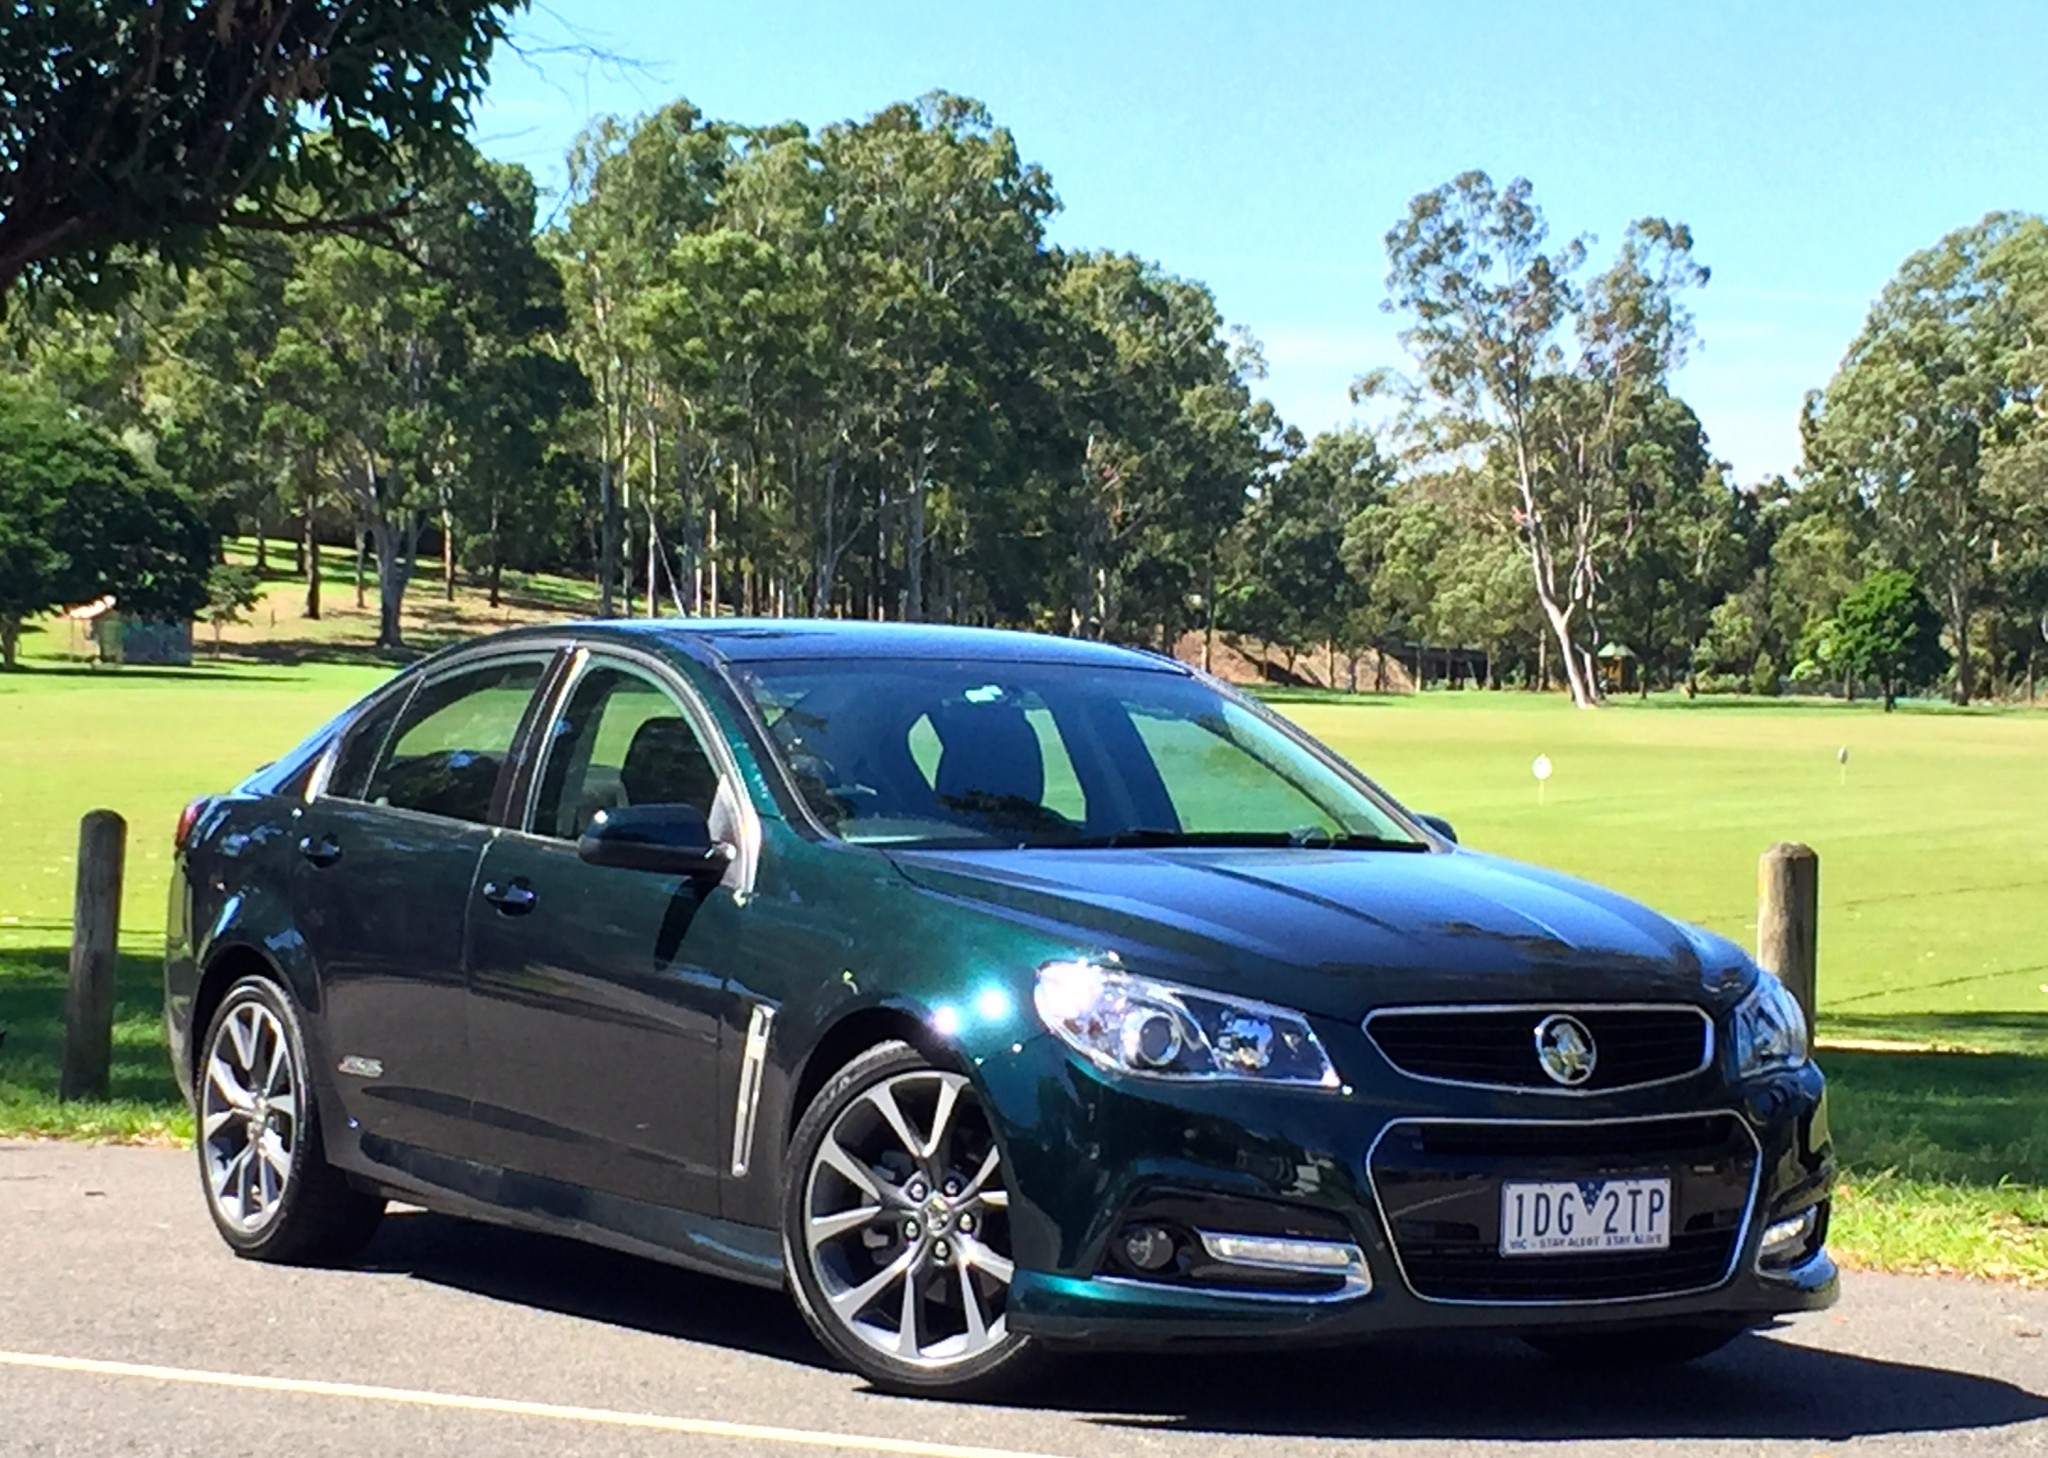 2015 Holden Commodore SSV